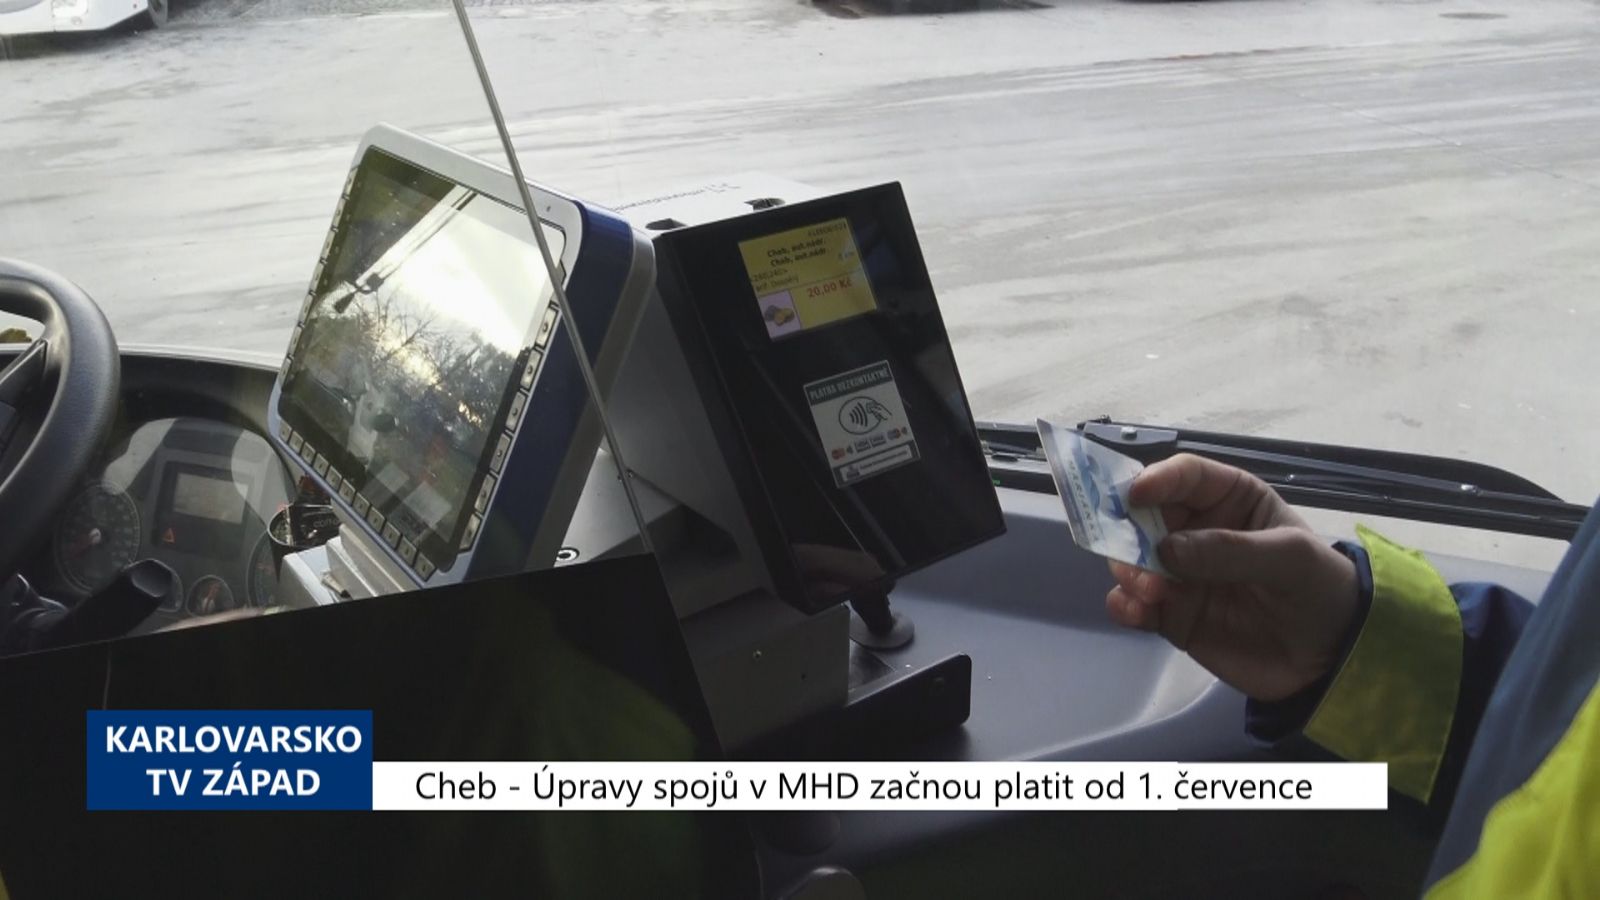 Cheb: Úpravy spojů v MHD začnou platit od 1. července (TV Západ)